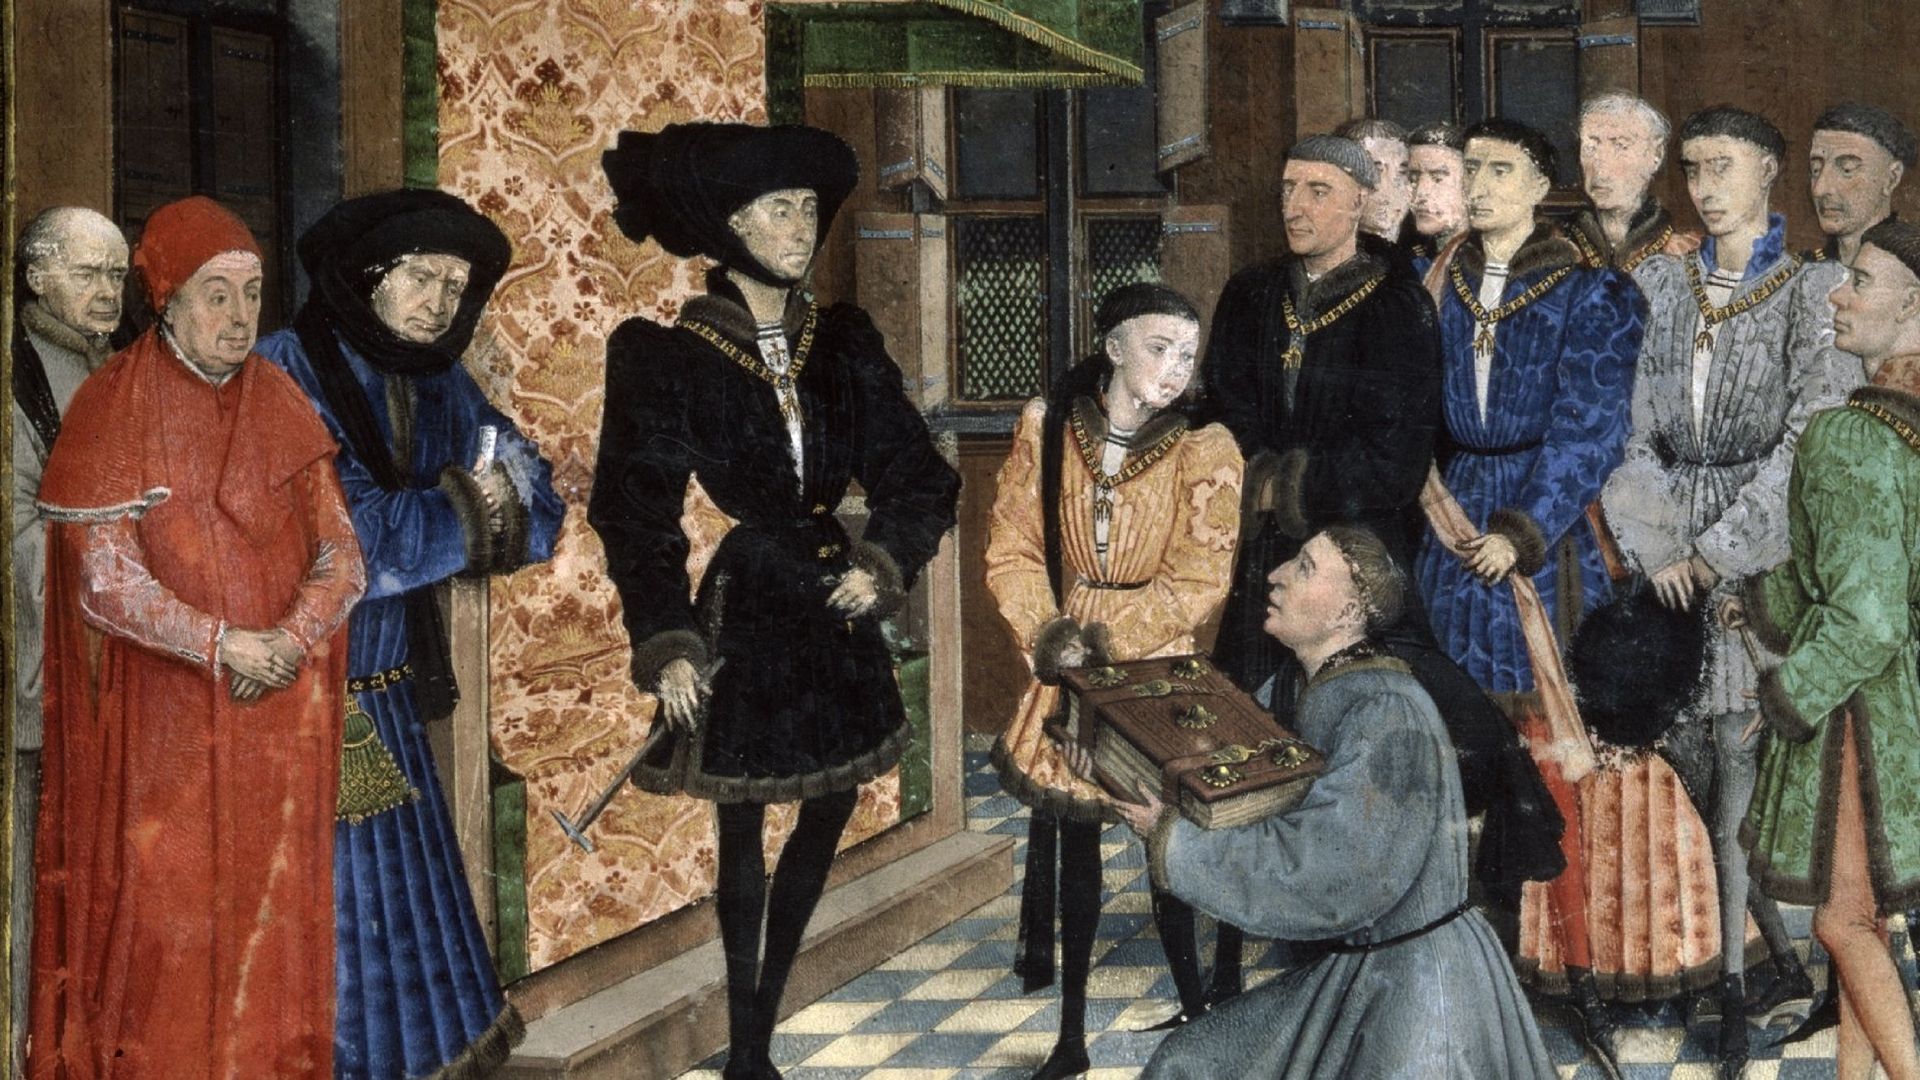 Jean Wauquelin présente son ouvrage à Philippe le Bon. Miniature de Rogier van der Weyden dans Les Chroniques de Hainaut. 